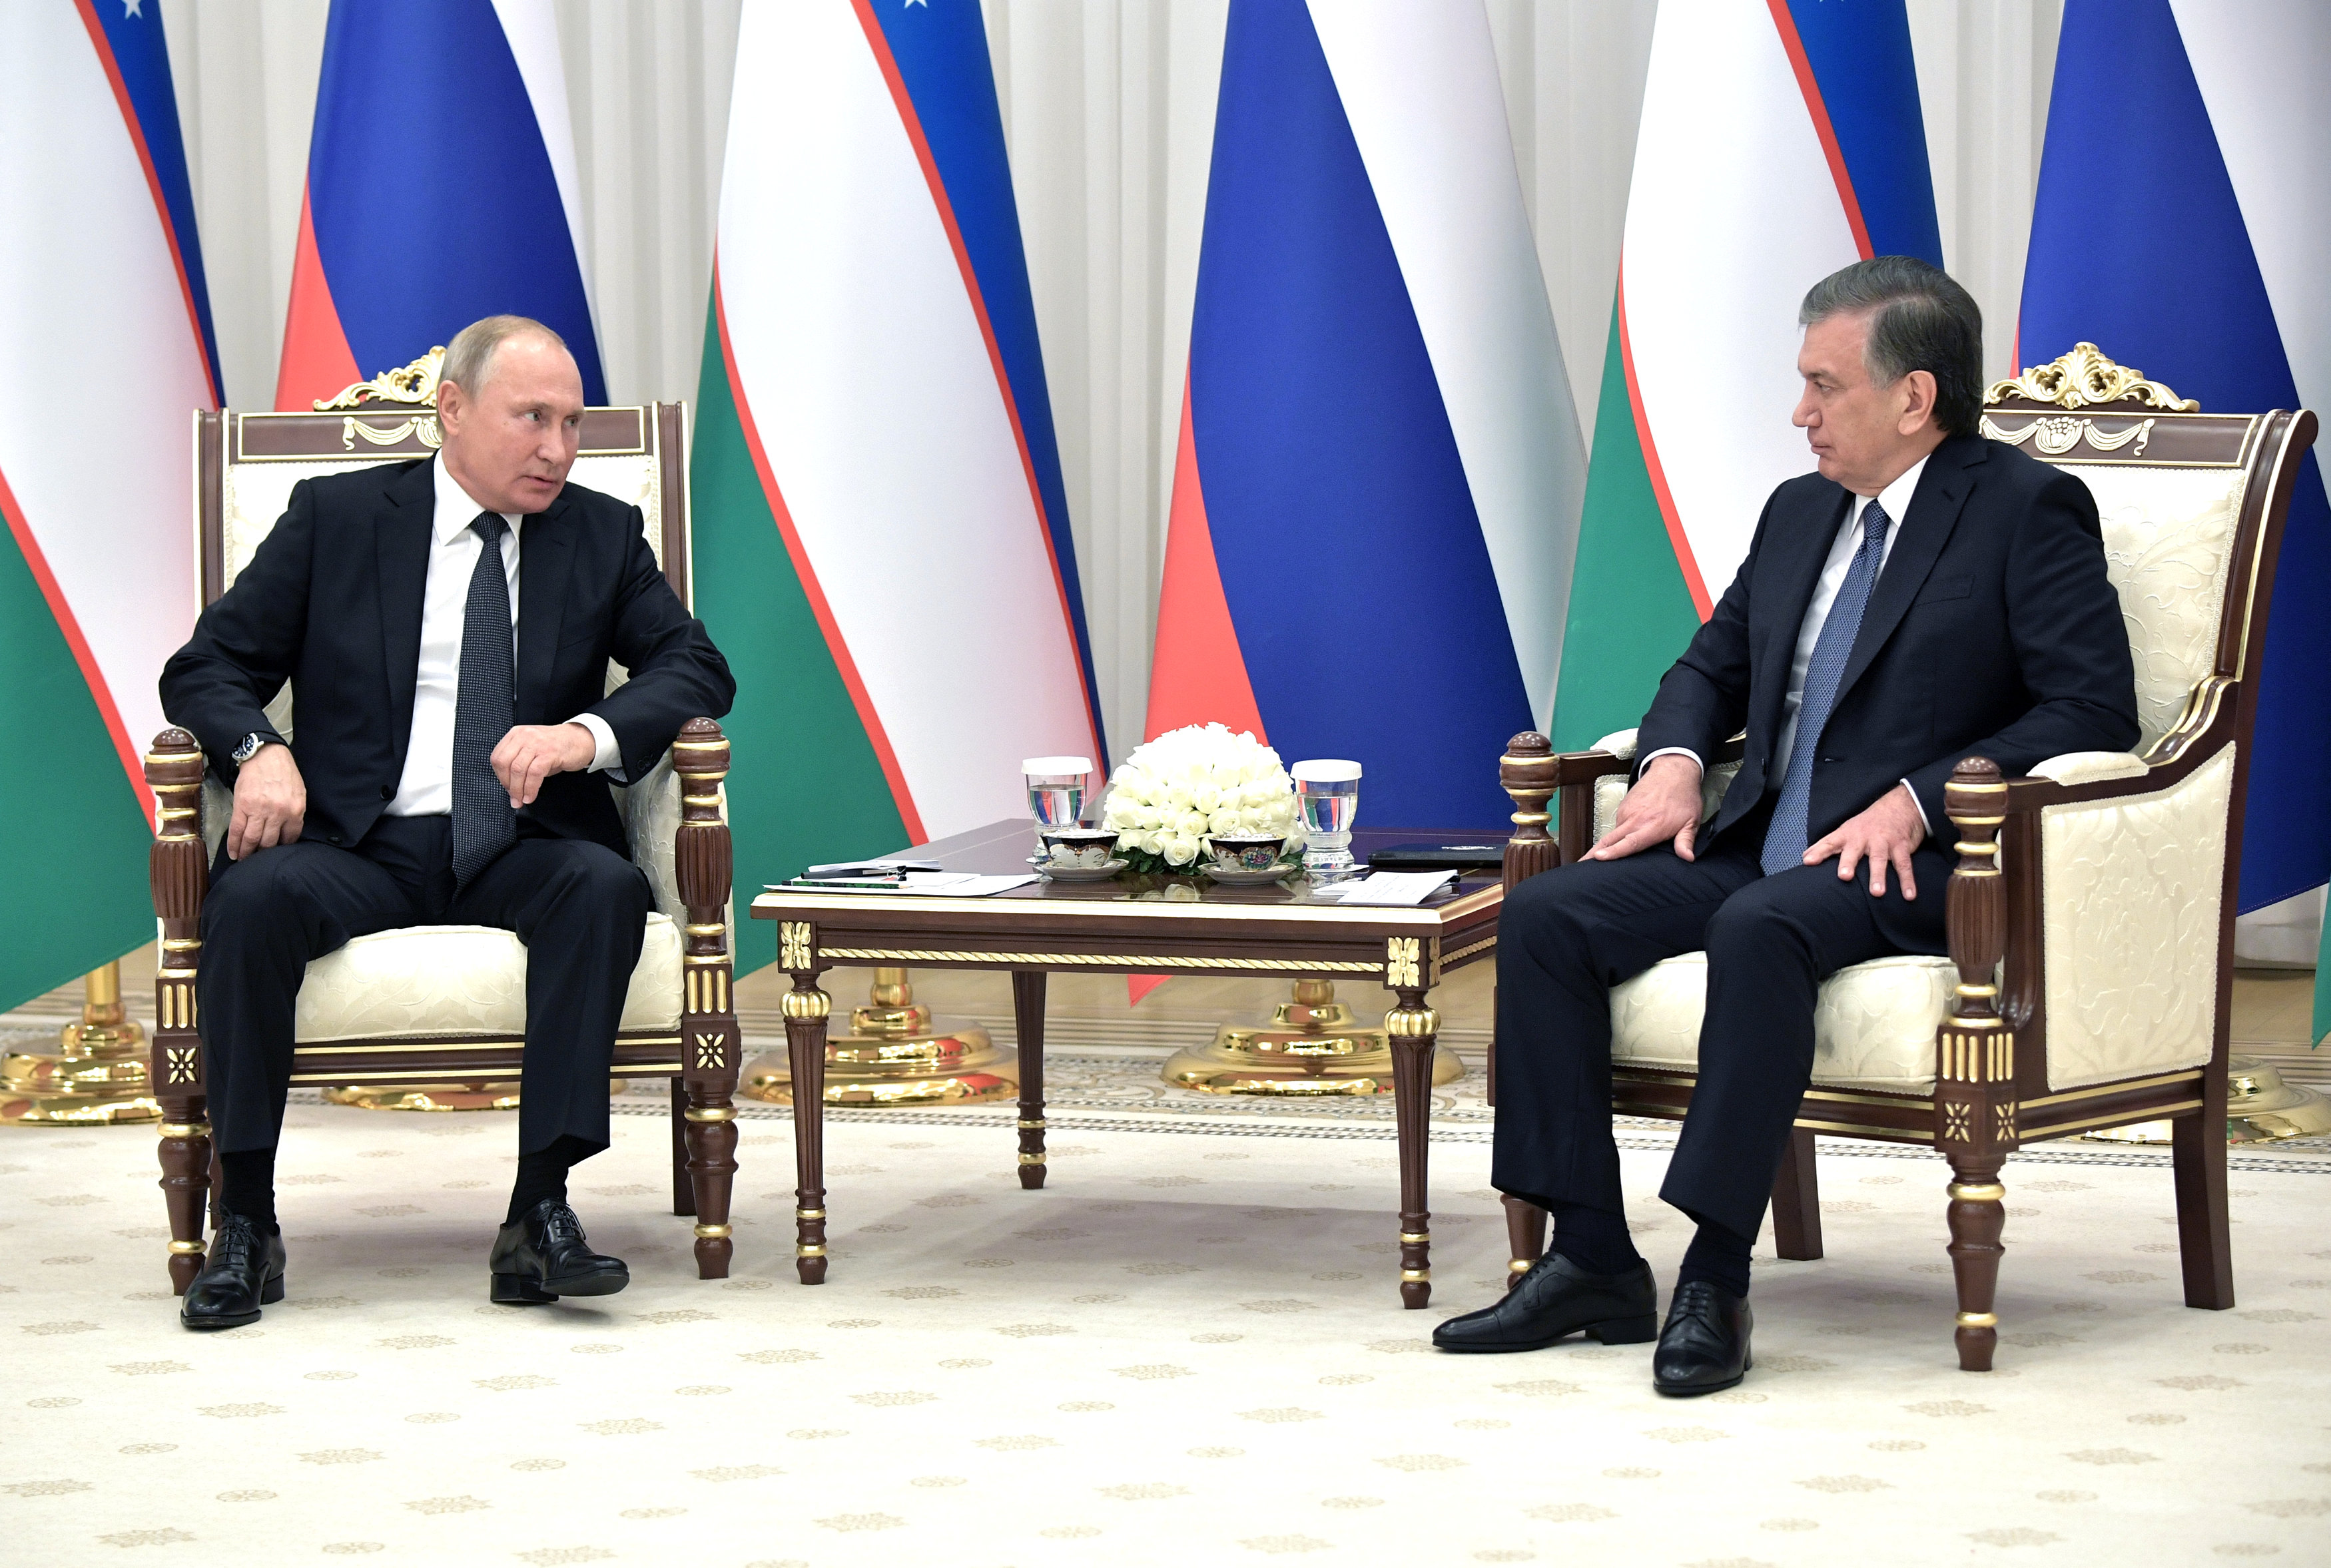 بوتين والرئيس الأوزبكى شوكت ميرضيايف